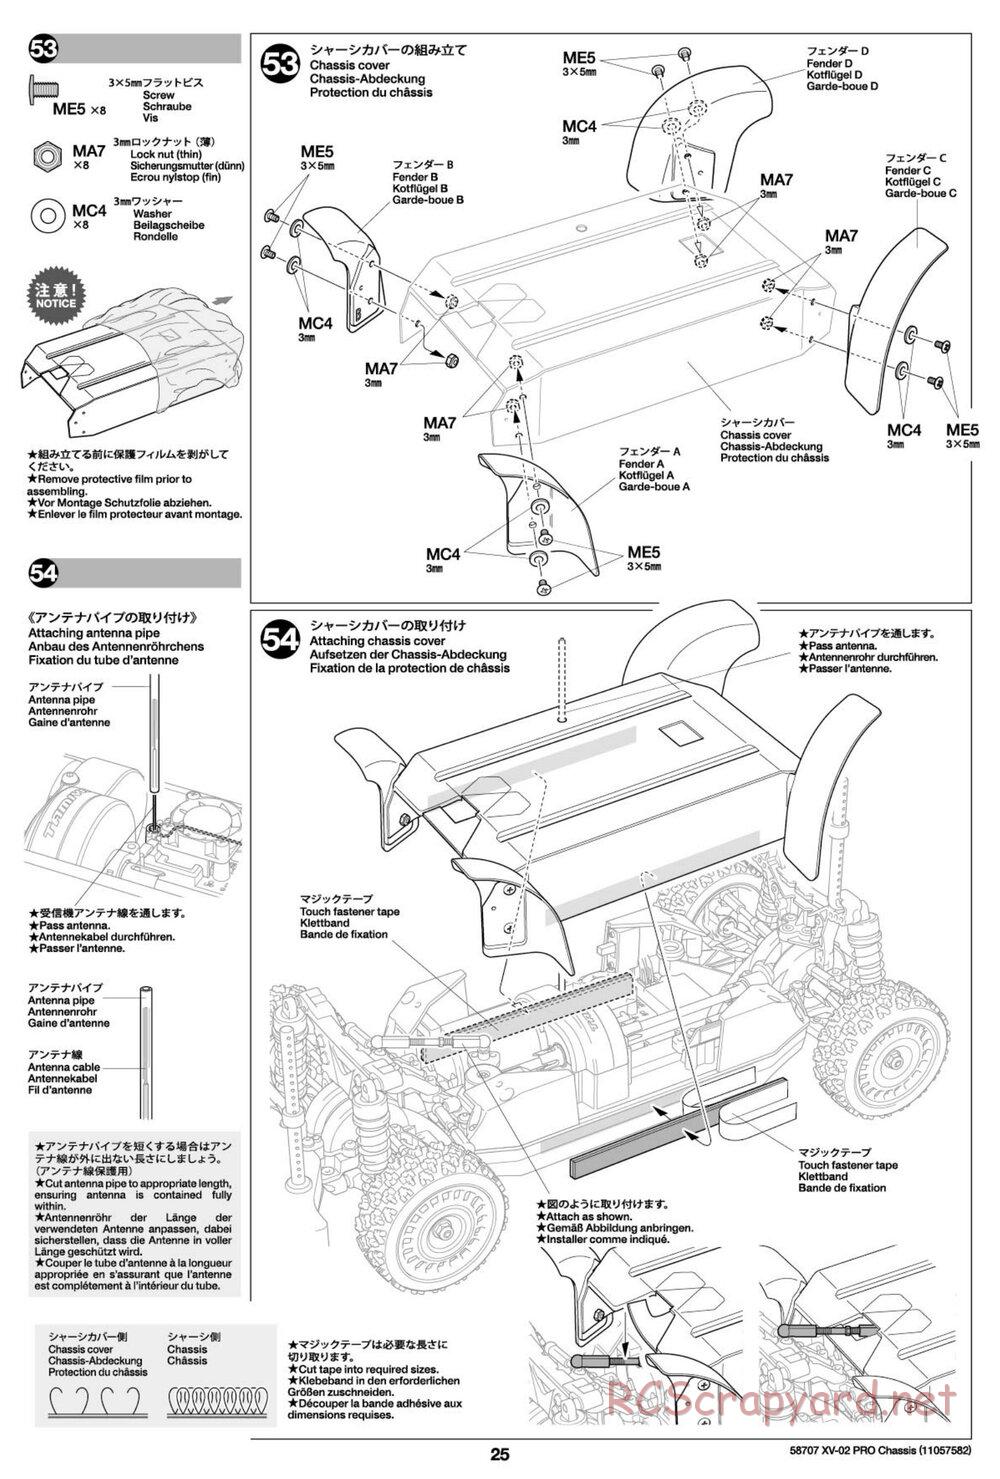 Tamiya - XV-02 Pro Chassis - Manual - Page 25